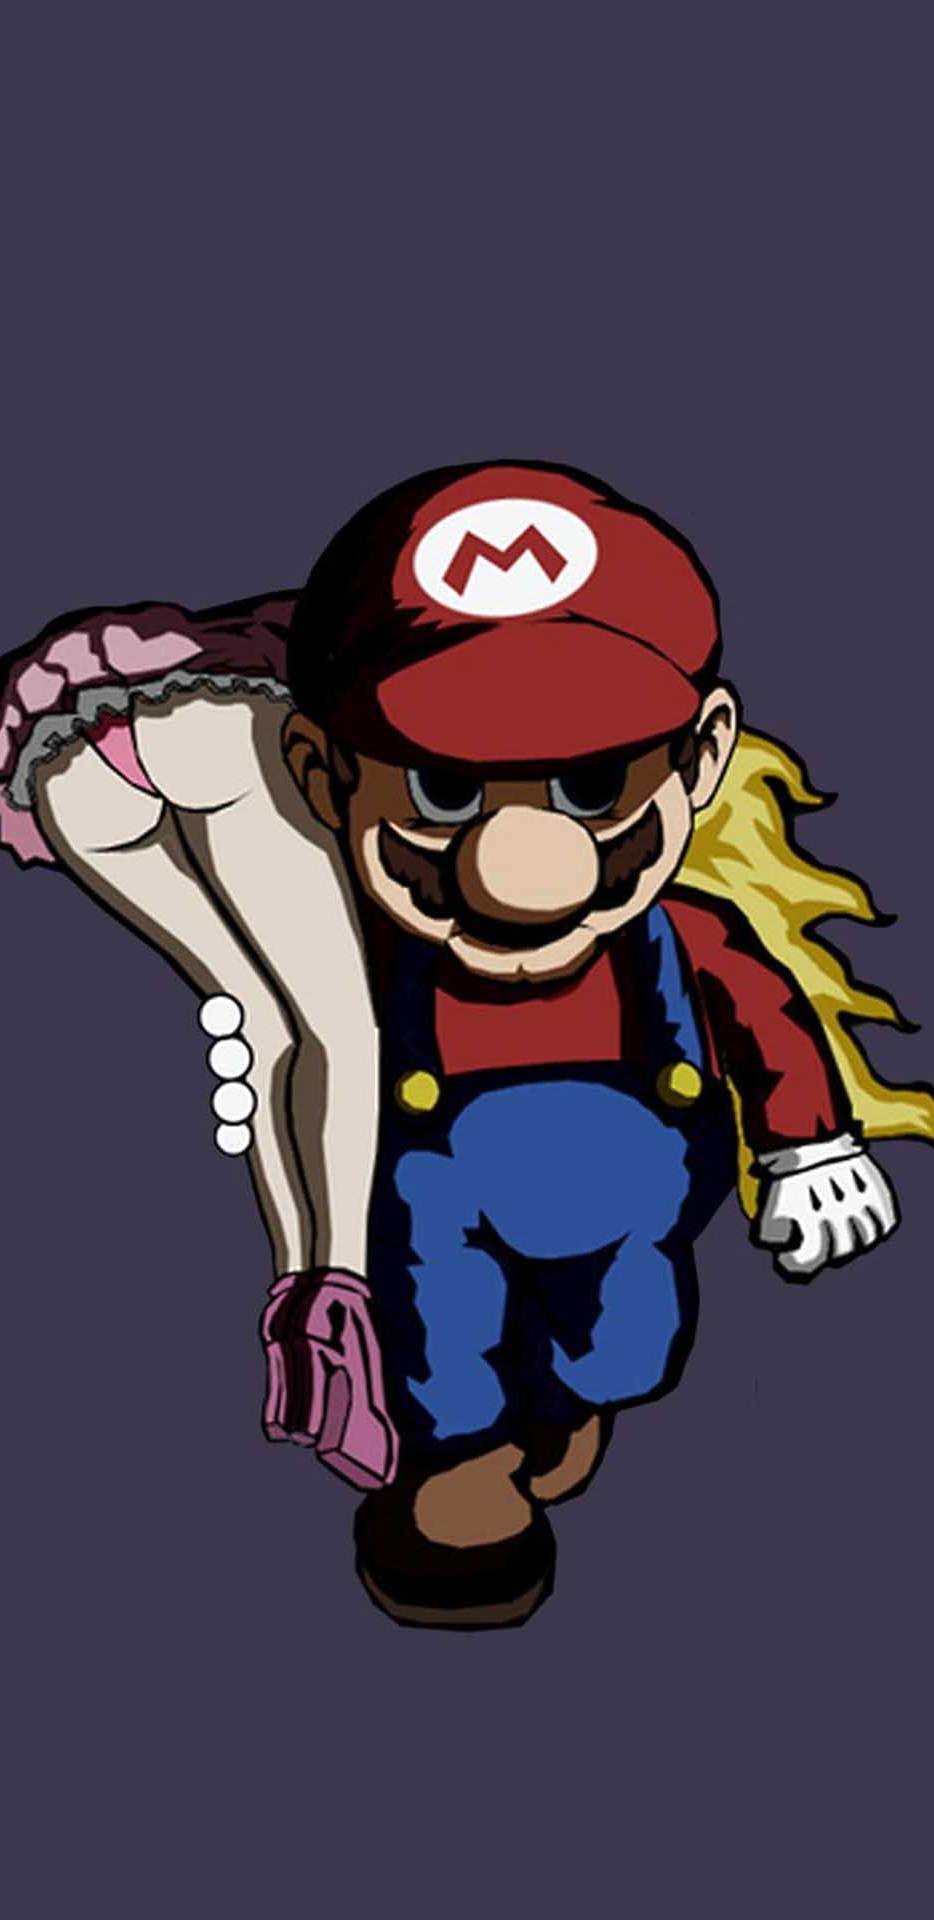 Mario feels like a bo$$ - meme